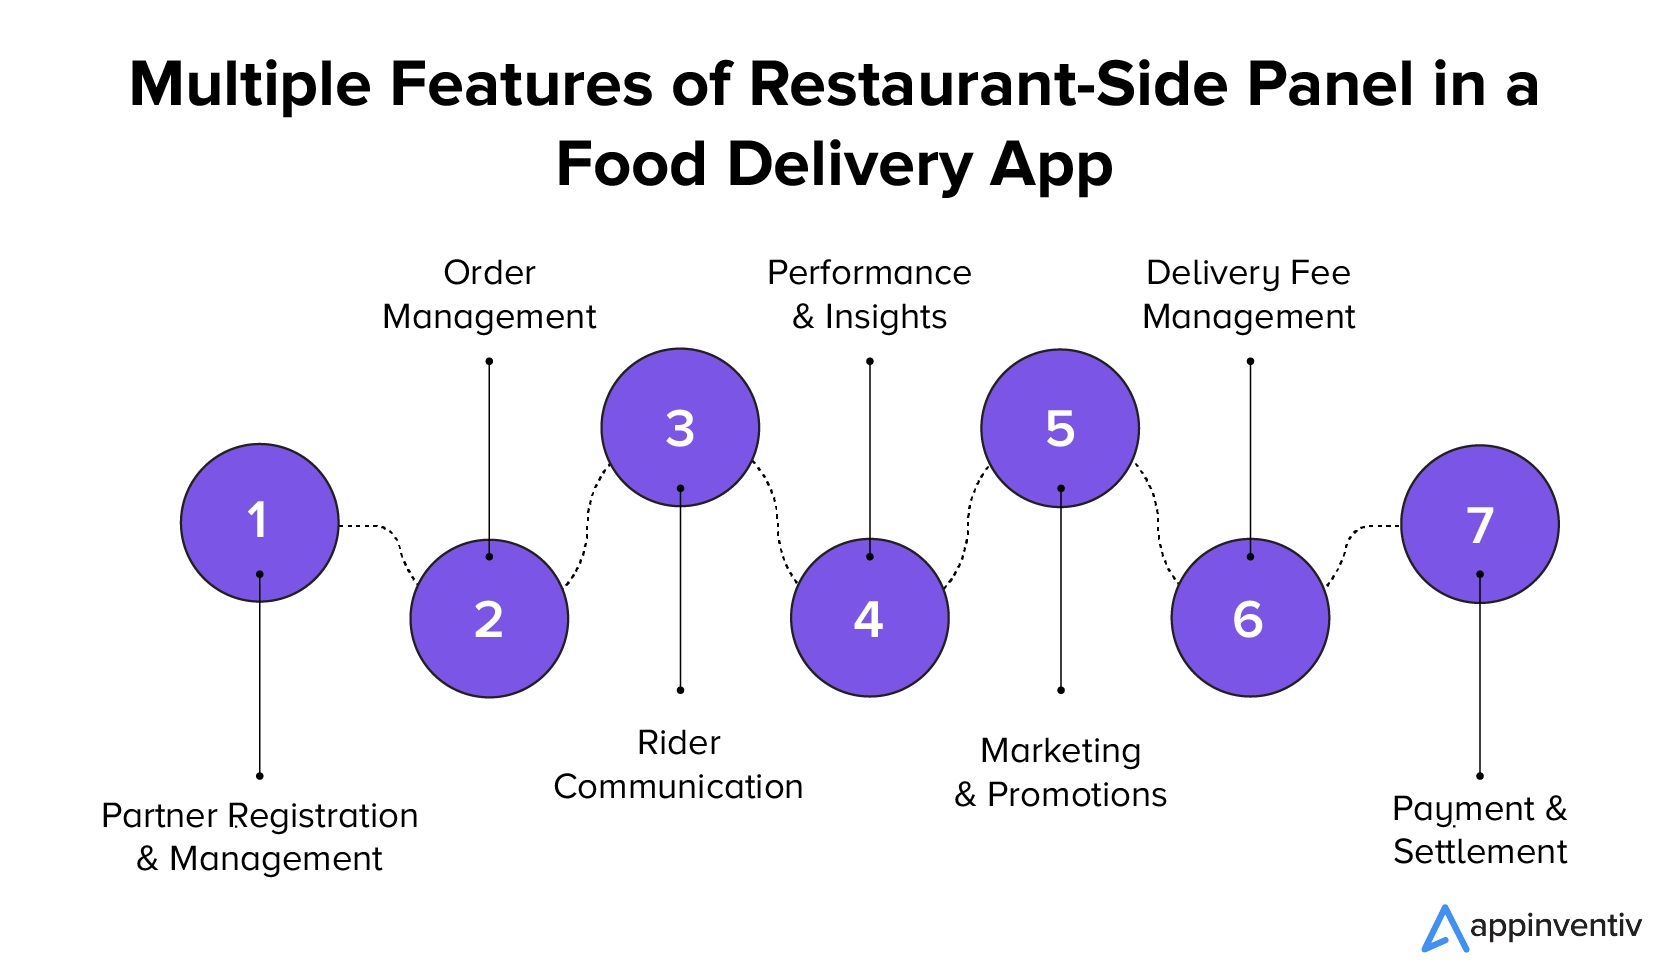 送餐應用程式中客戶面板的多項功能